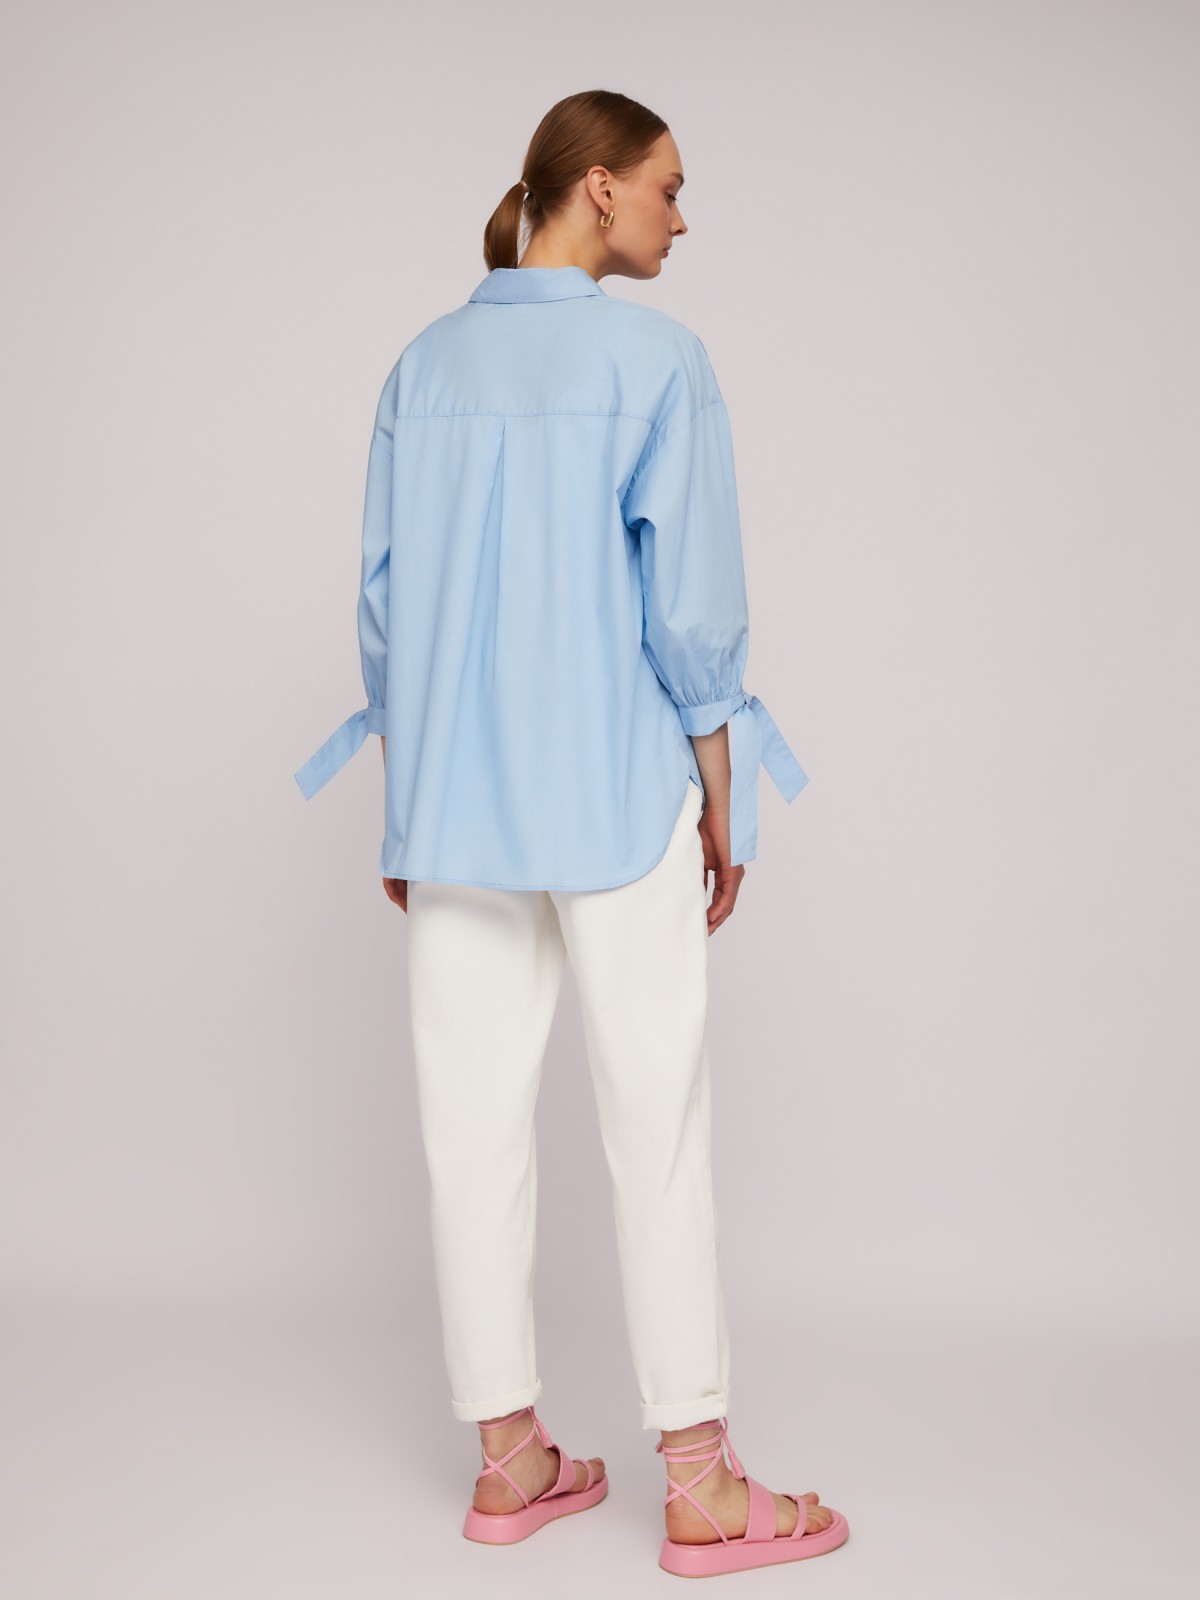 Рубашка из хлопка оверсайз силуэта с акцентными манжетами zolla 024211159033, цвет голубой, размер M - фото 6